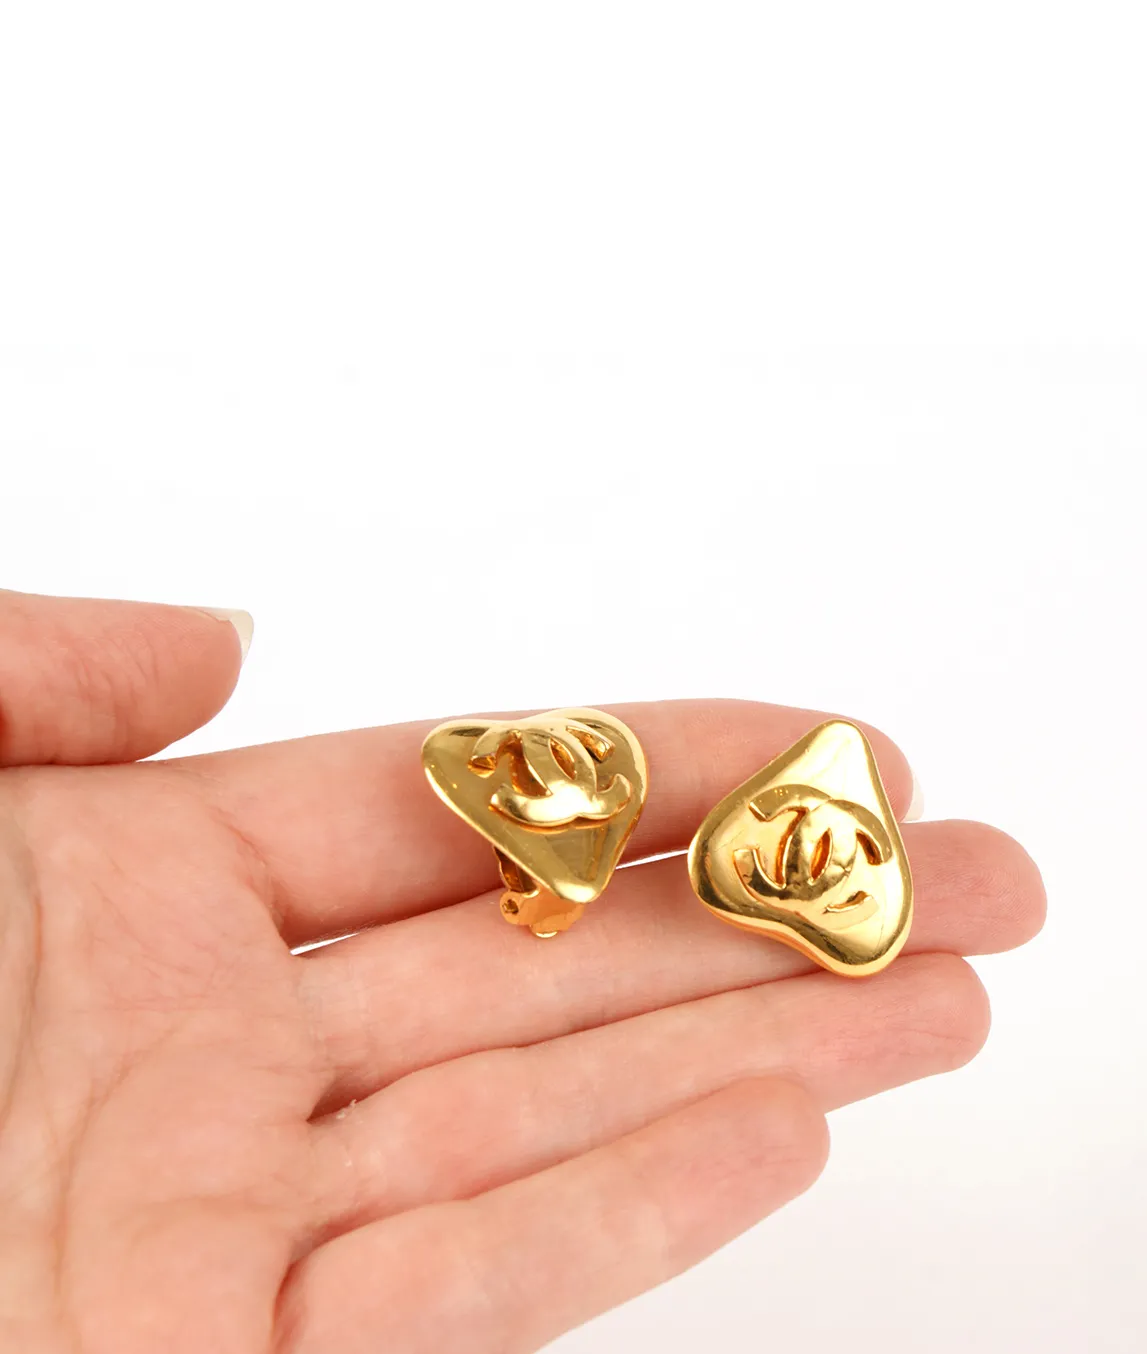 Chanel heart earrings in the hand